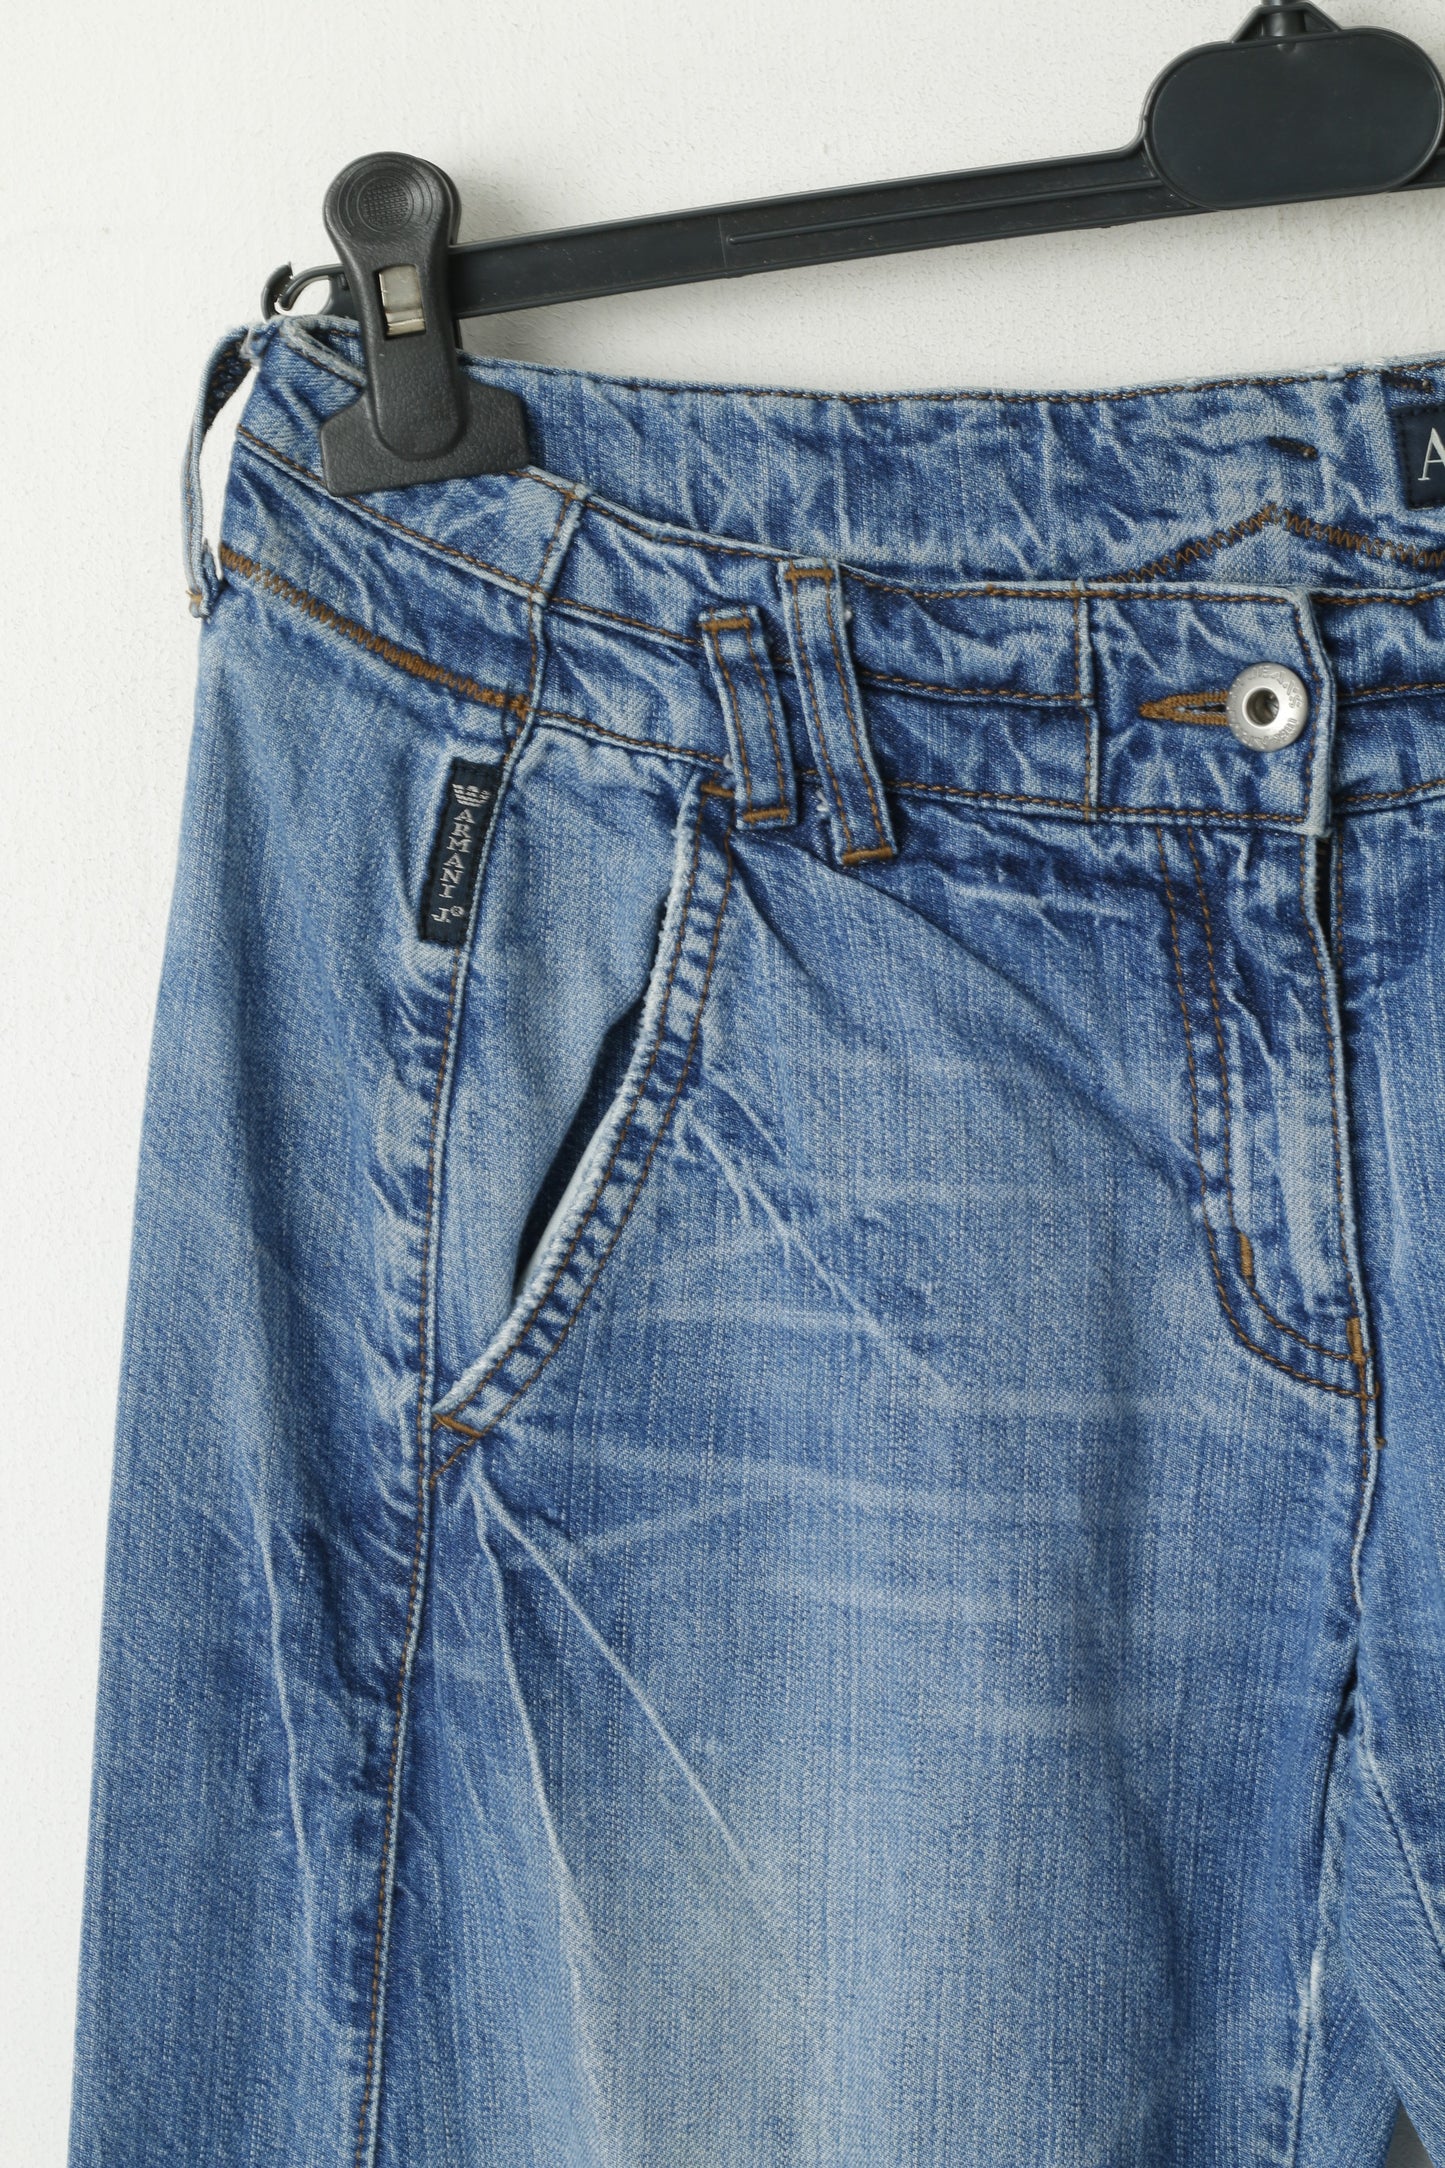 Armani Jeans Men 27 Jeans Trousers Blue Denim Cotton Wide Legs Low Waist Pants